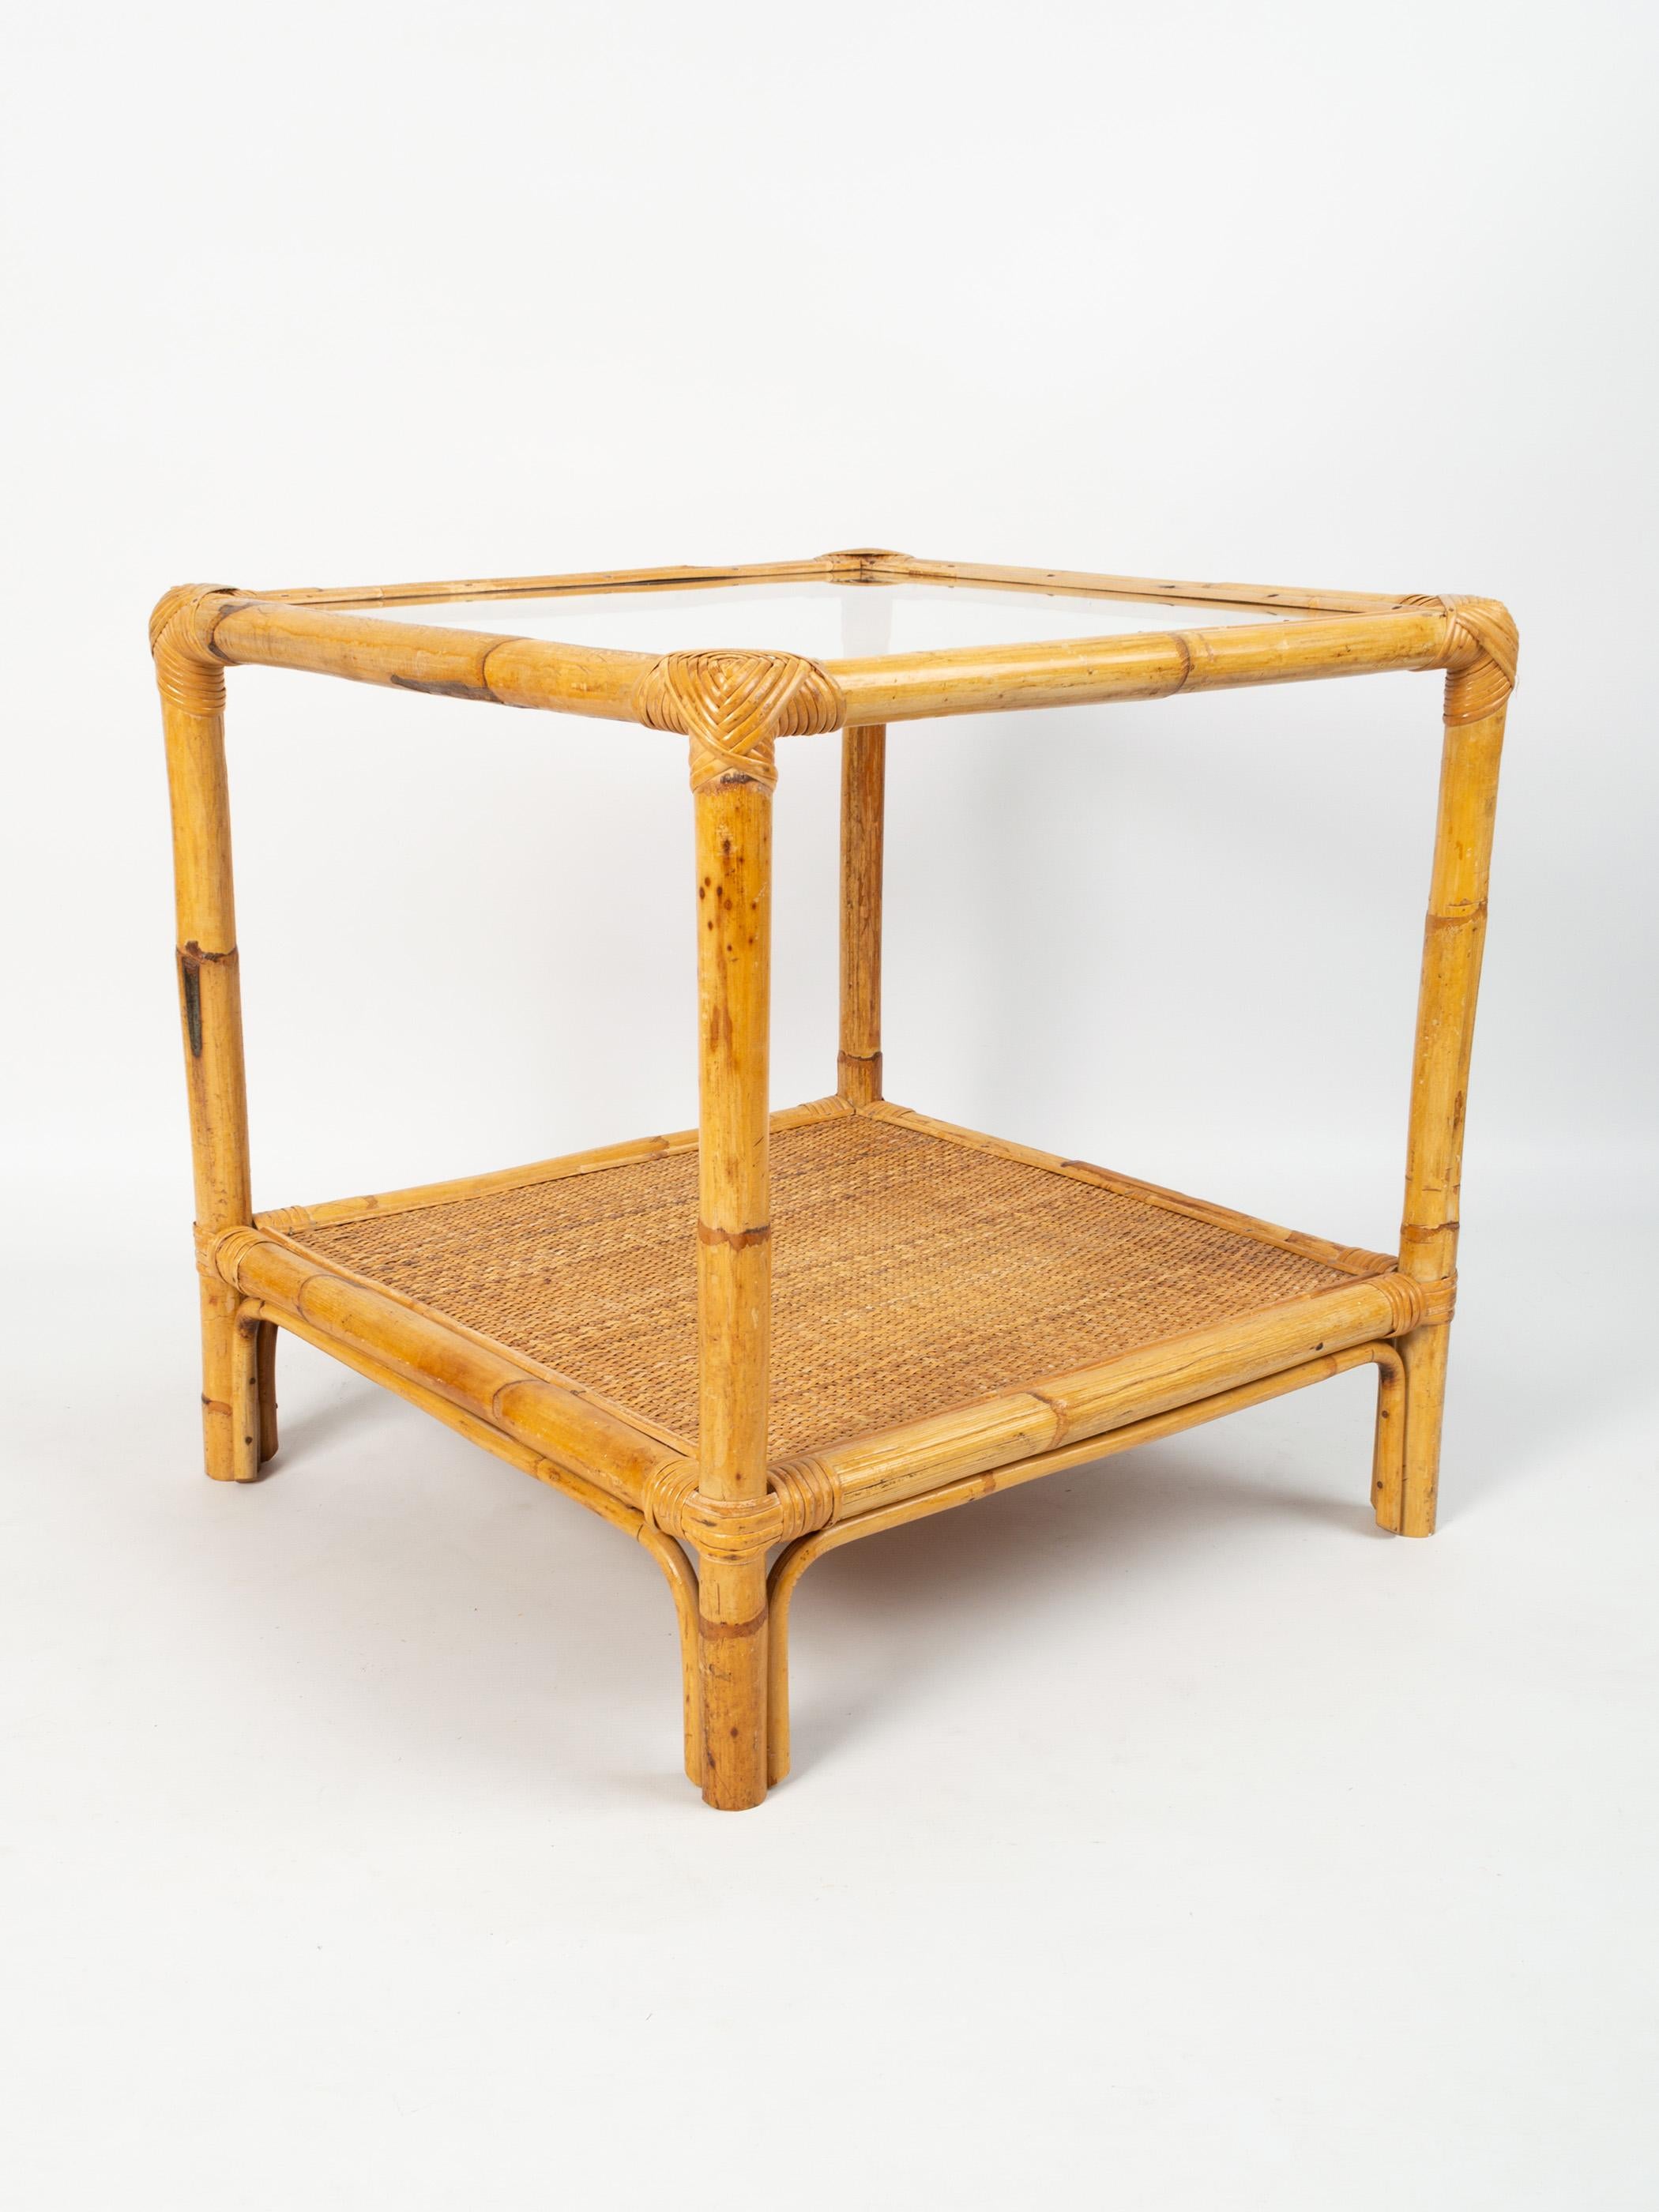 Table basse italienne du milieu du siècle en bambou et rotin, table d'appoint C.1960.

Présenté dans un excellent état vintage.